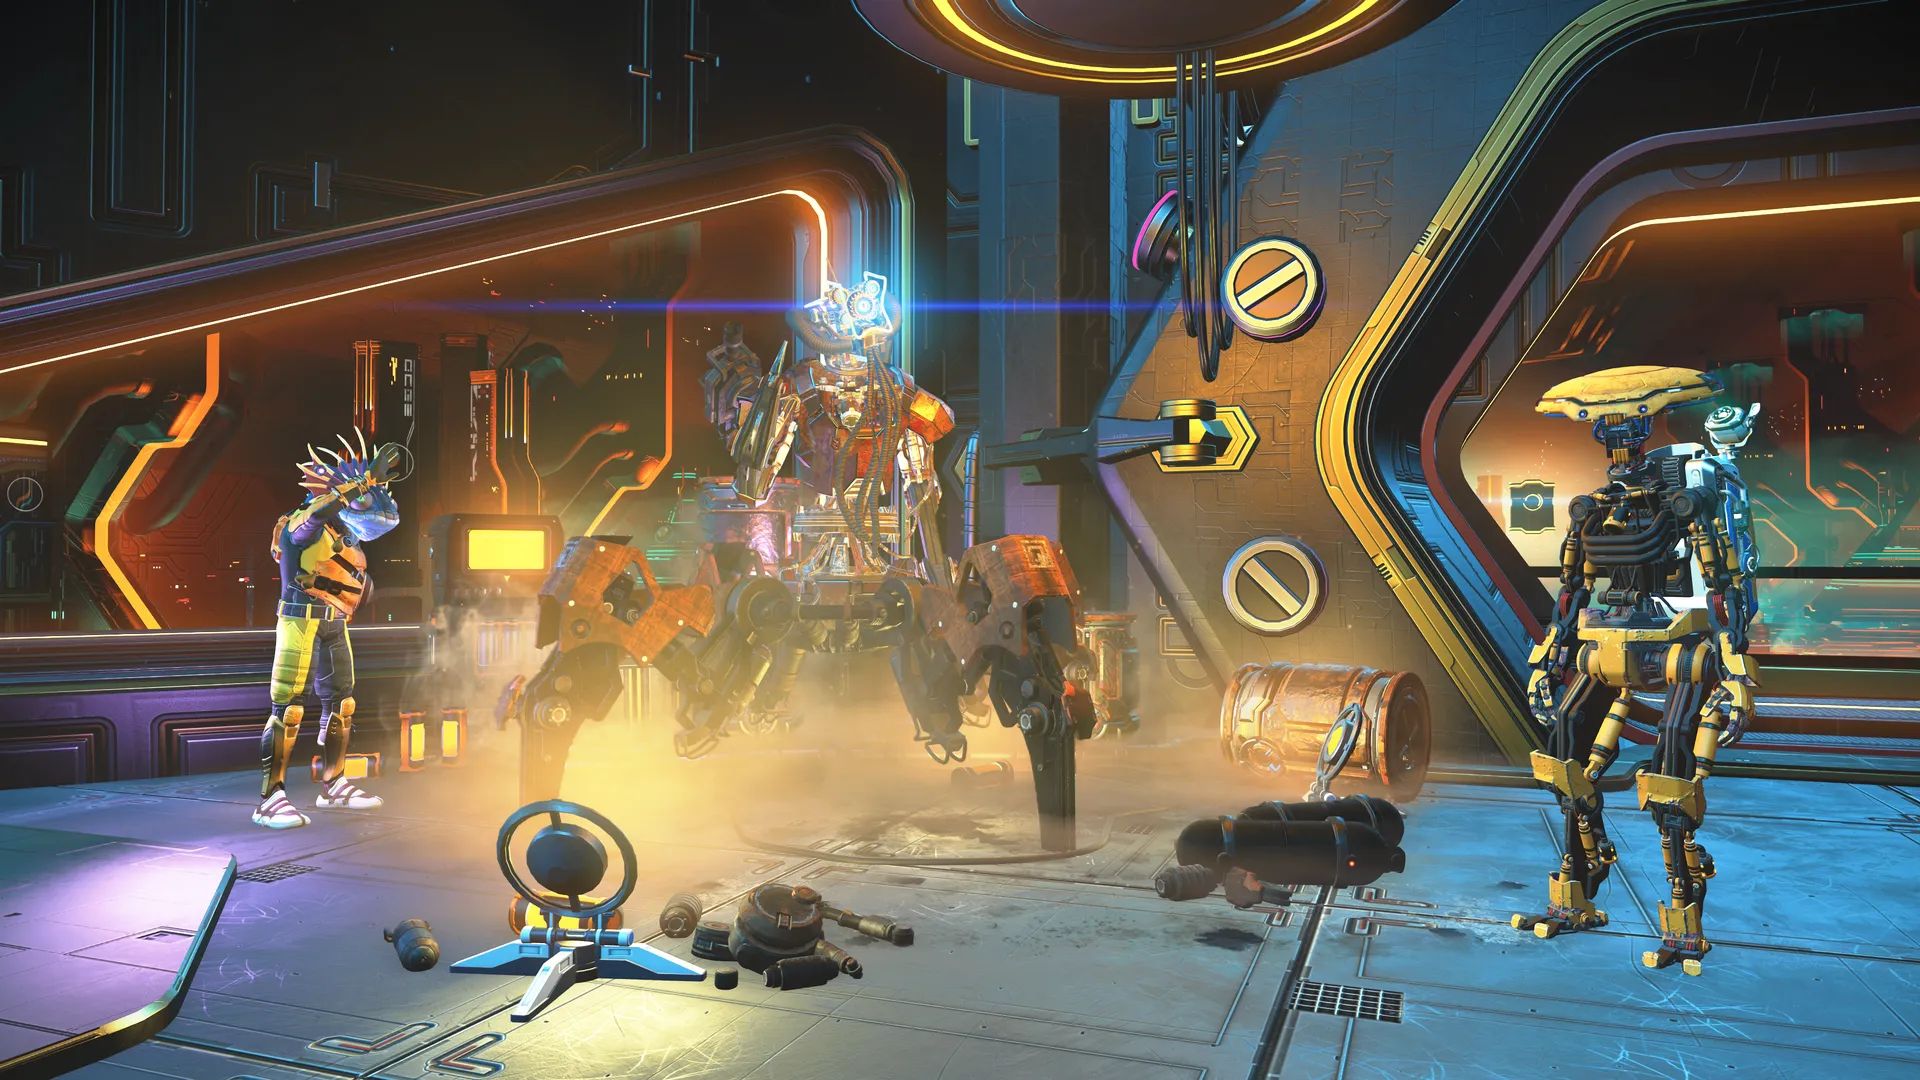 宇宙科幻良心游戏《无人深空》远征探险任务更新将持续5周